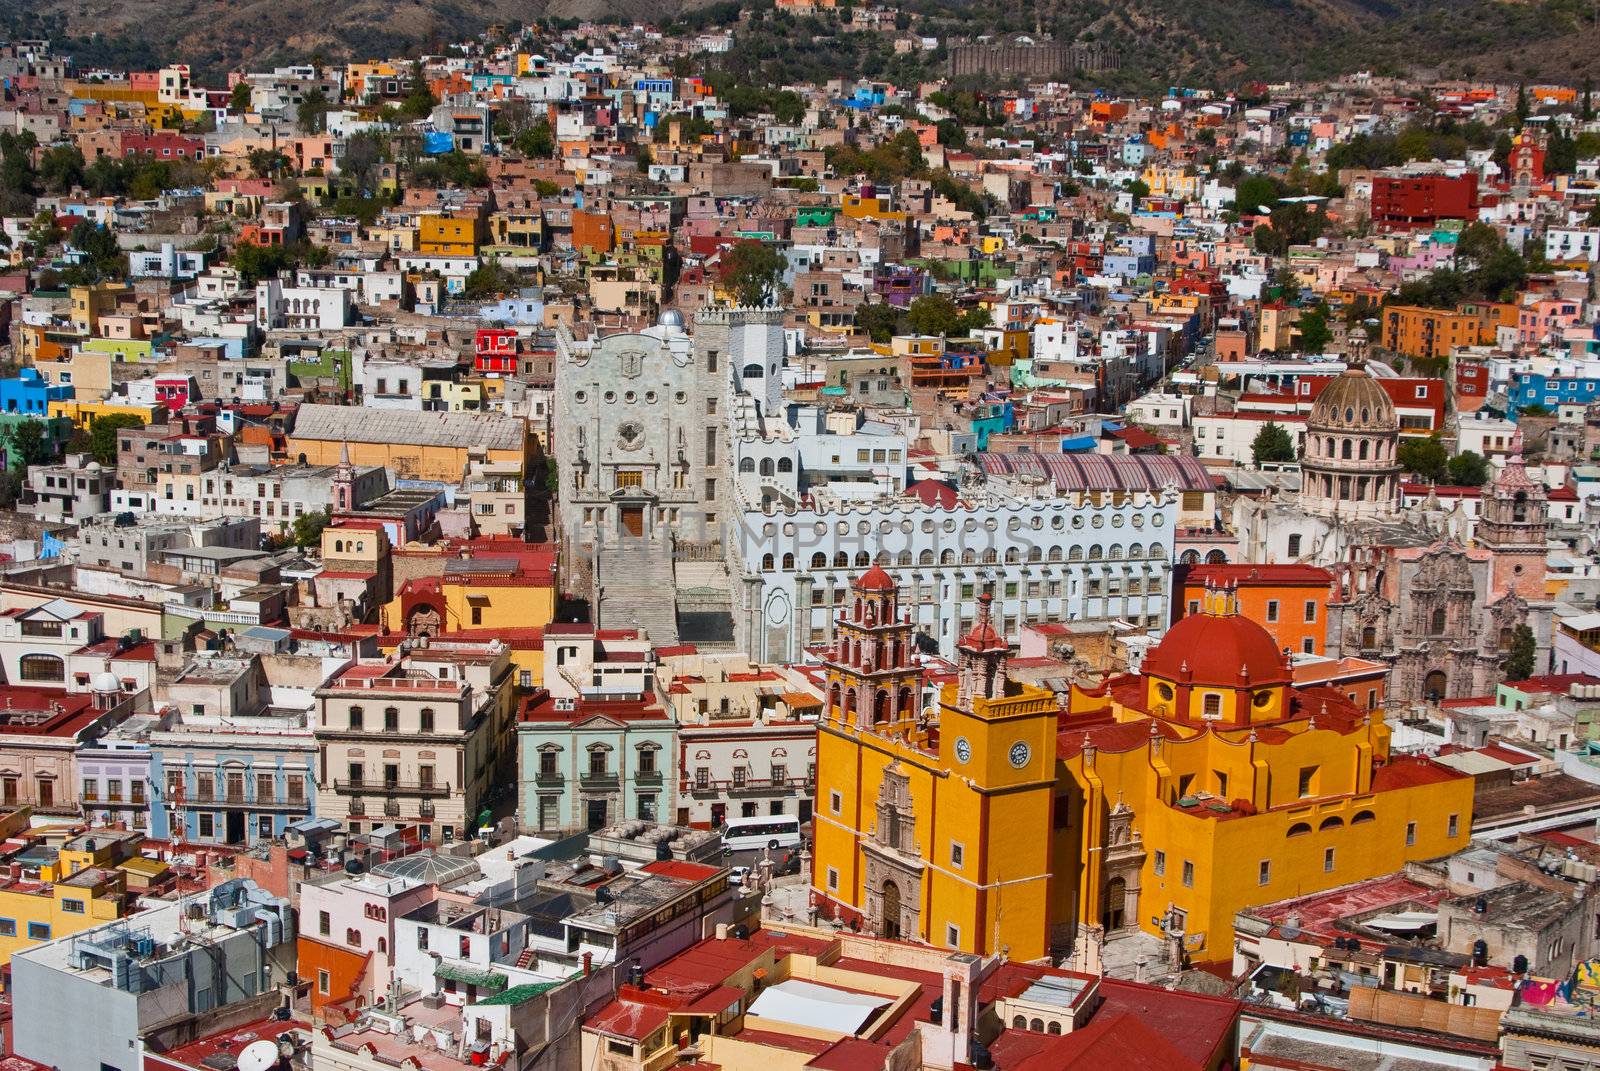 Guanajuato Mexico by emattil